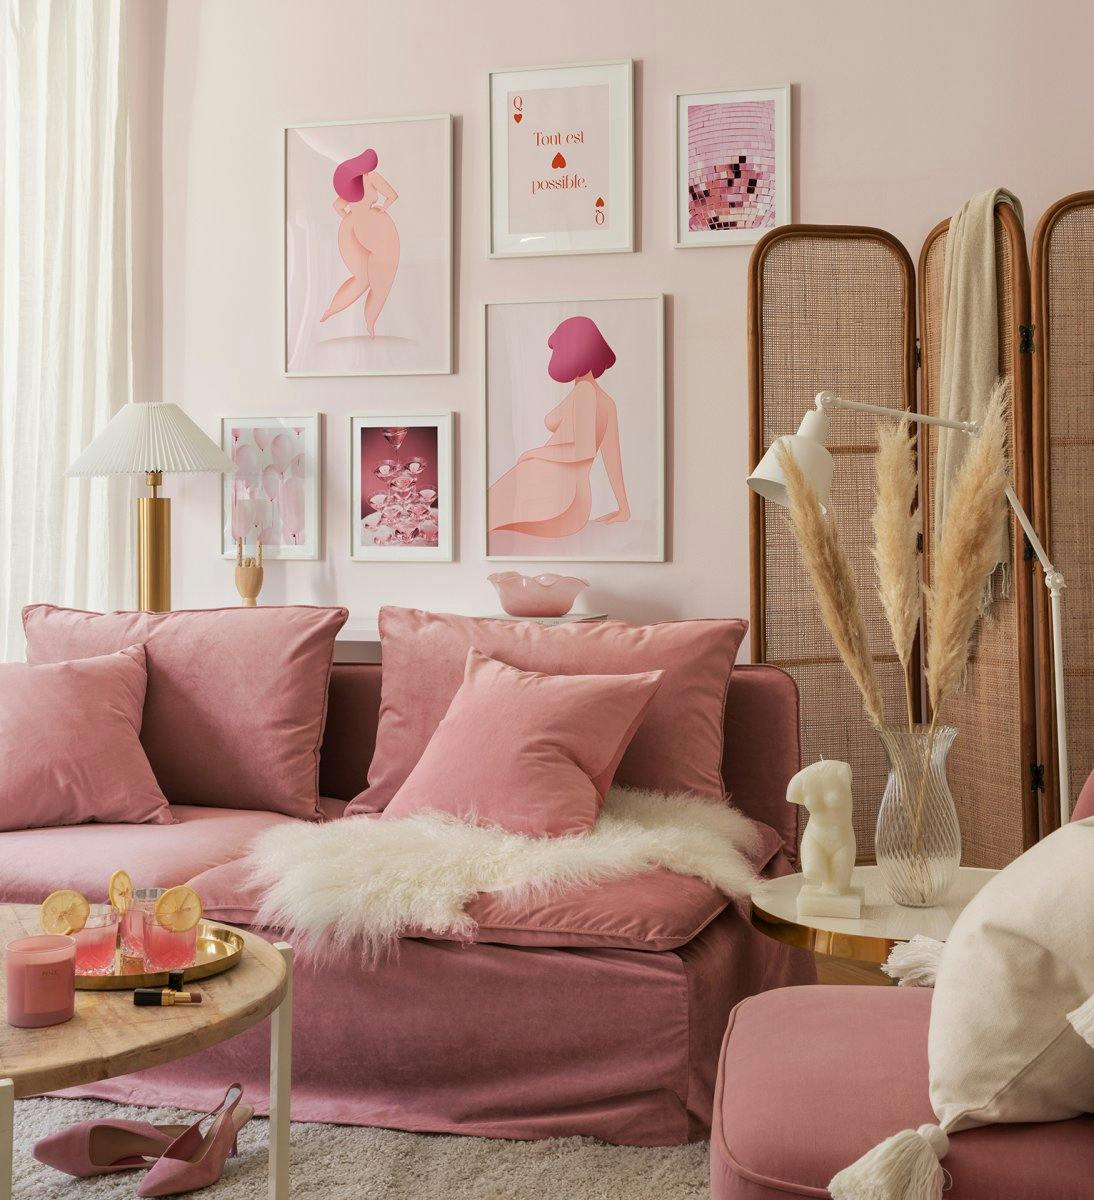 Růžová galerijní stěna s ženskými tvary, ilustracemi a fotografiemi v bílých dřevěných rámech do obývacího pokoje inspirovaná mo